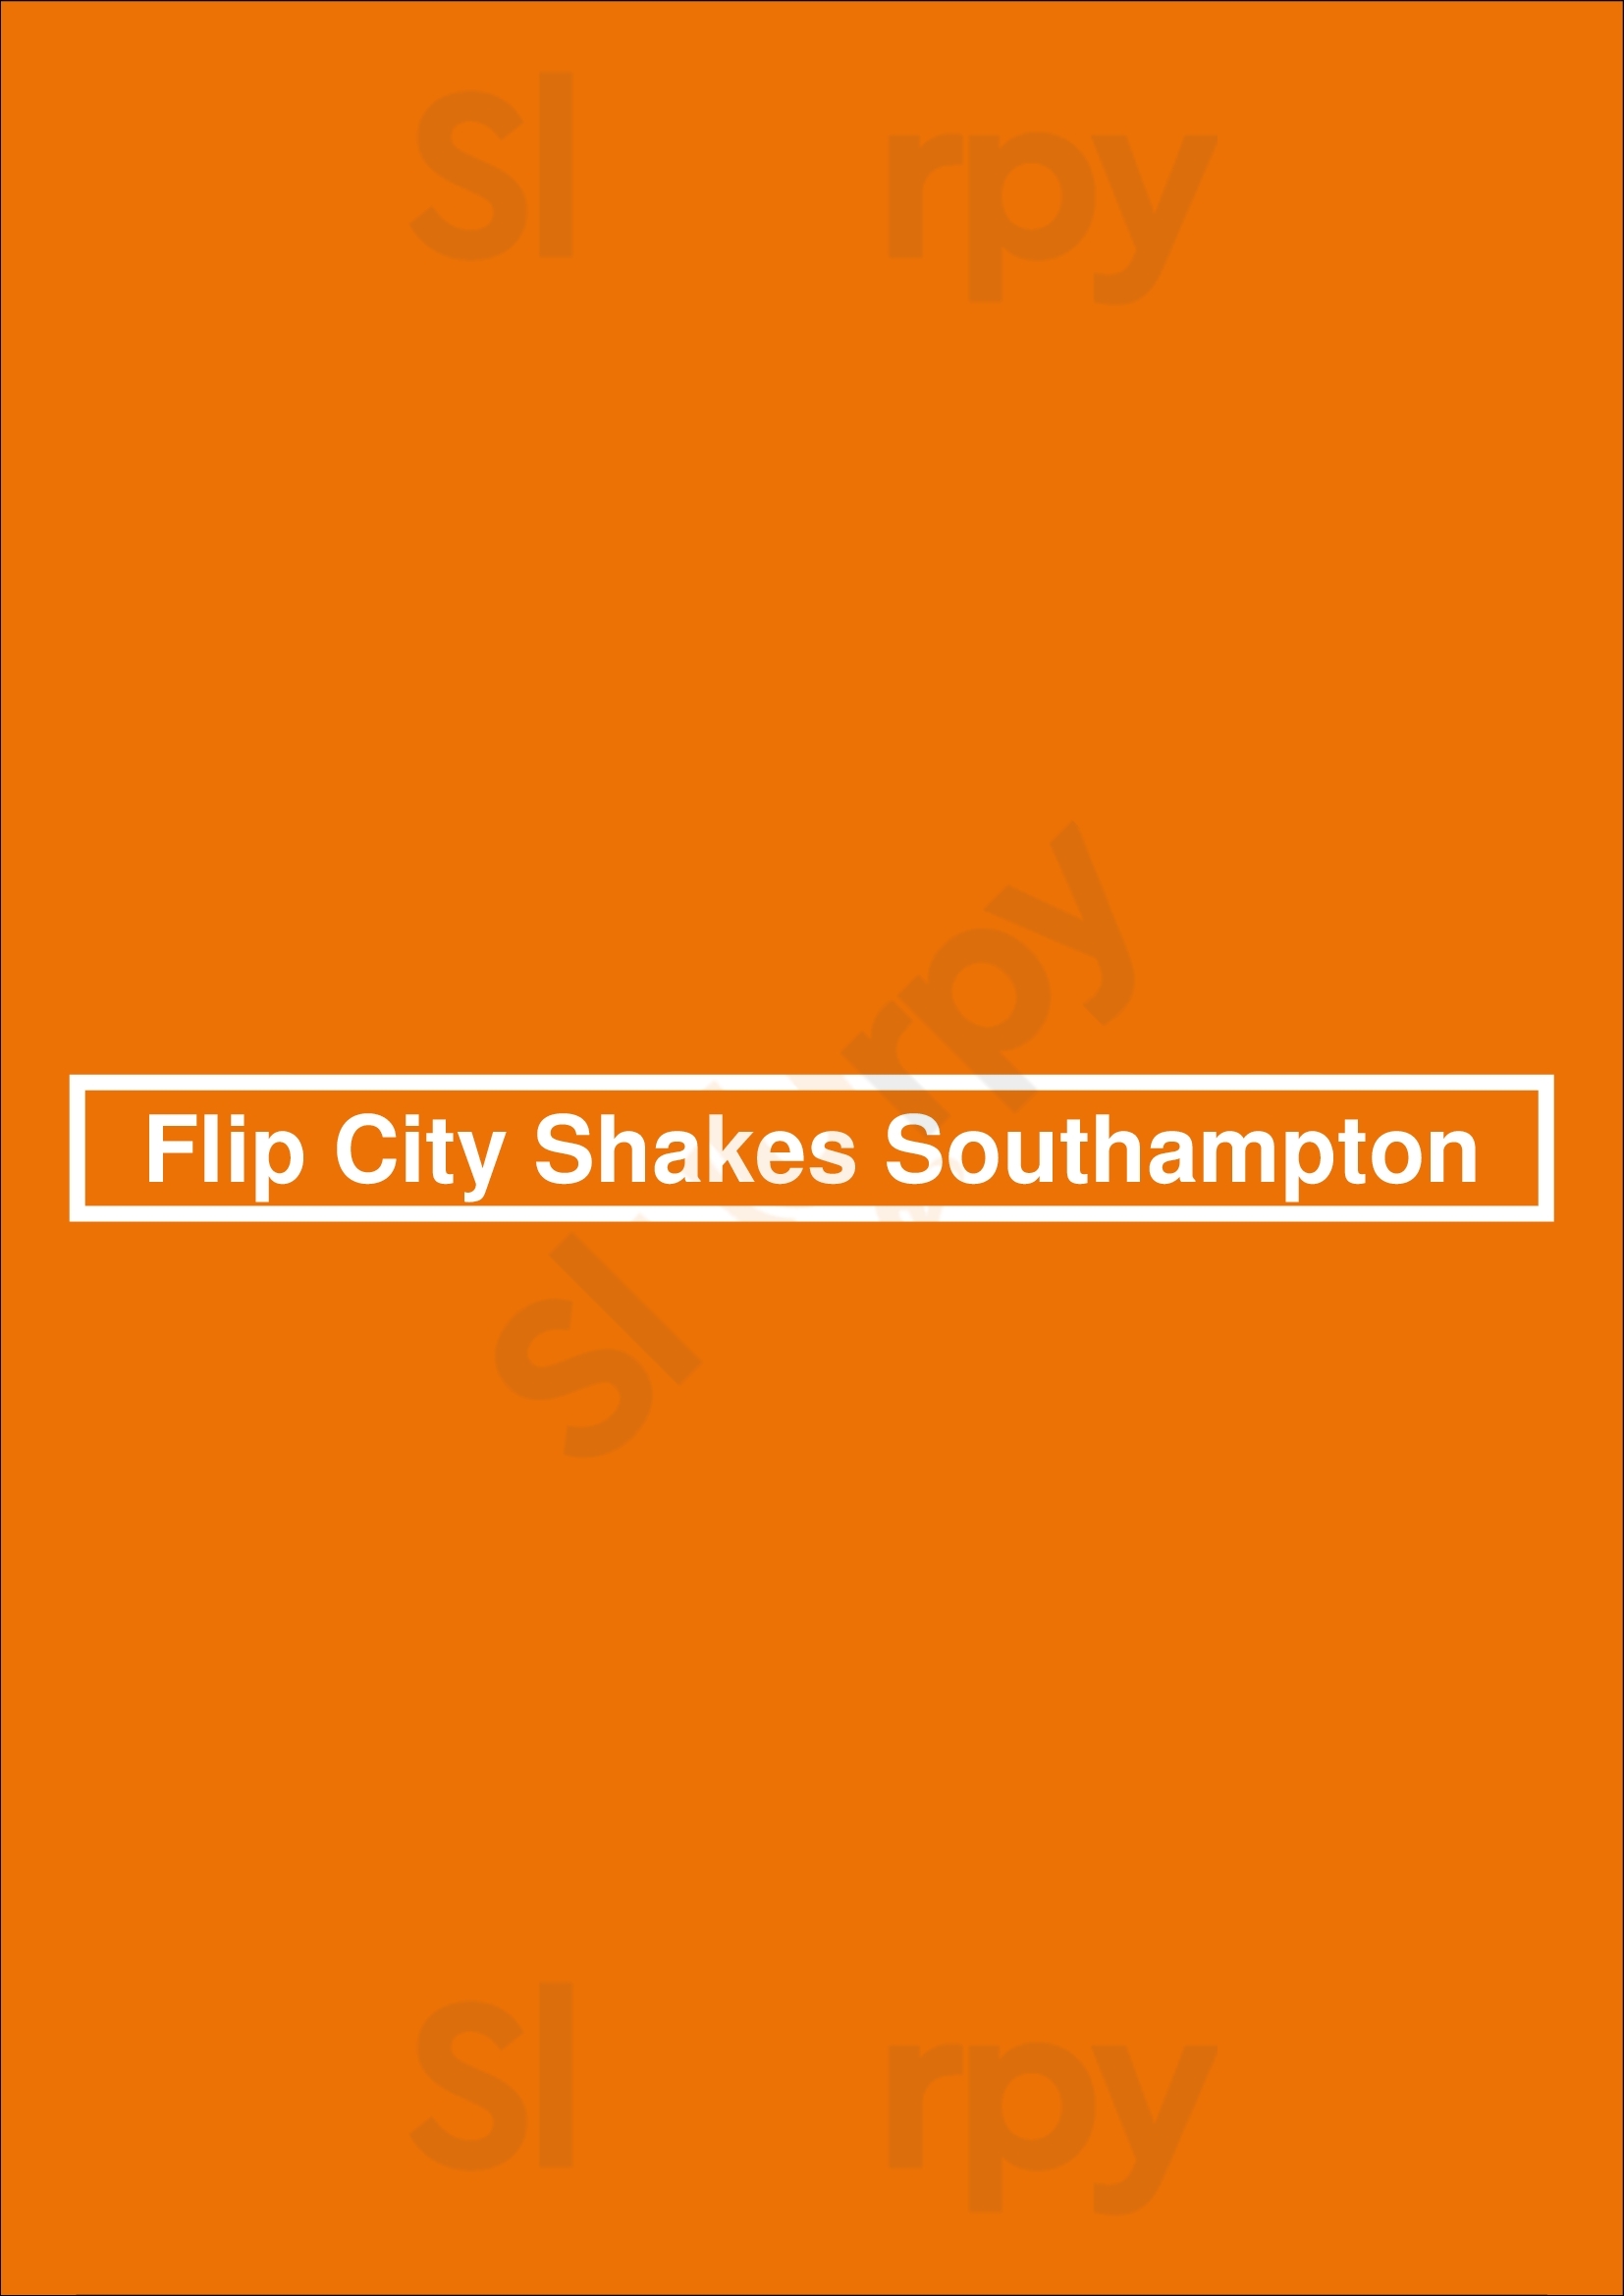 Flip City Shakes Southampton Southampton Menu - 1